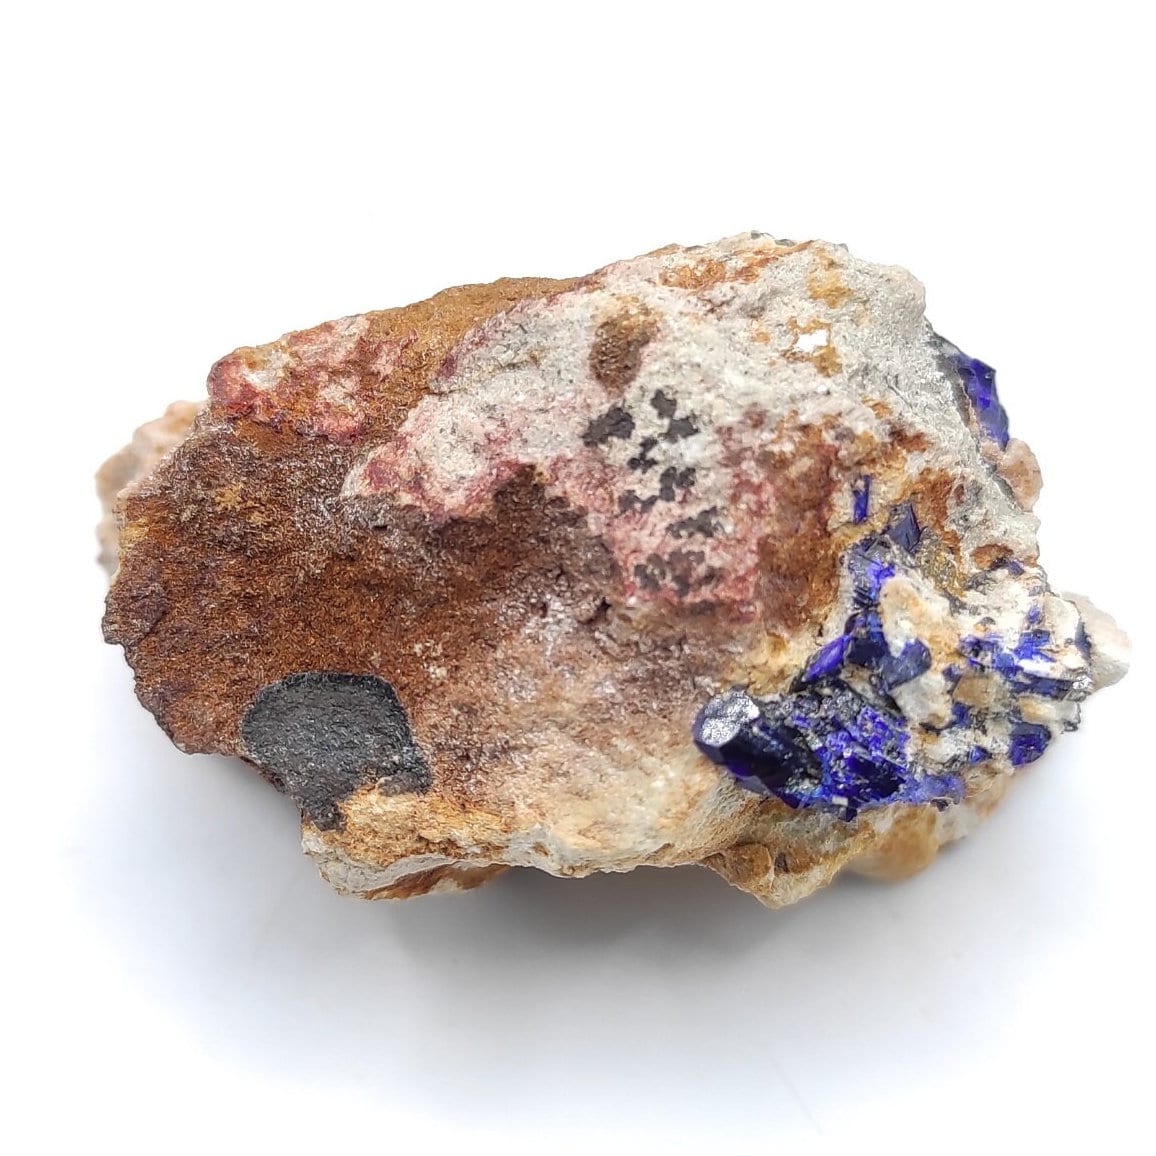 24g Crystallized Azurite - Kerrouchen, Morocco - Blue Azurite Specimen - High Quality Blue Azurite - Azurite Mineral Specimen